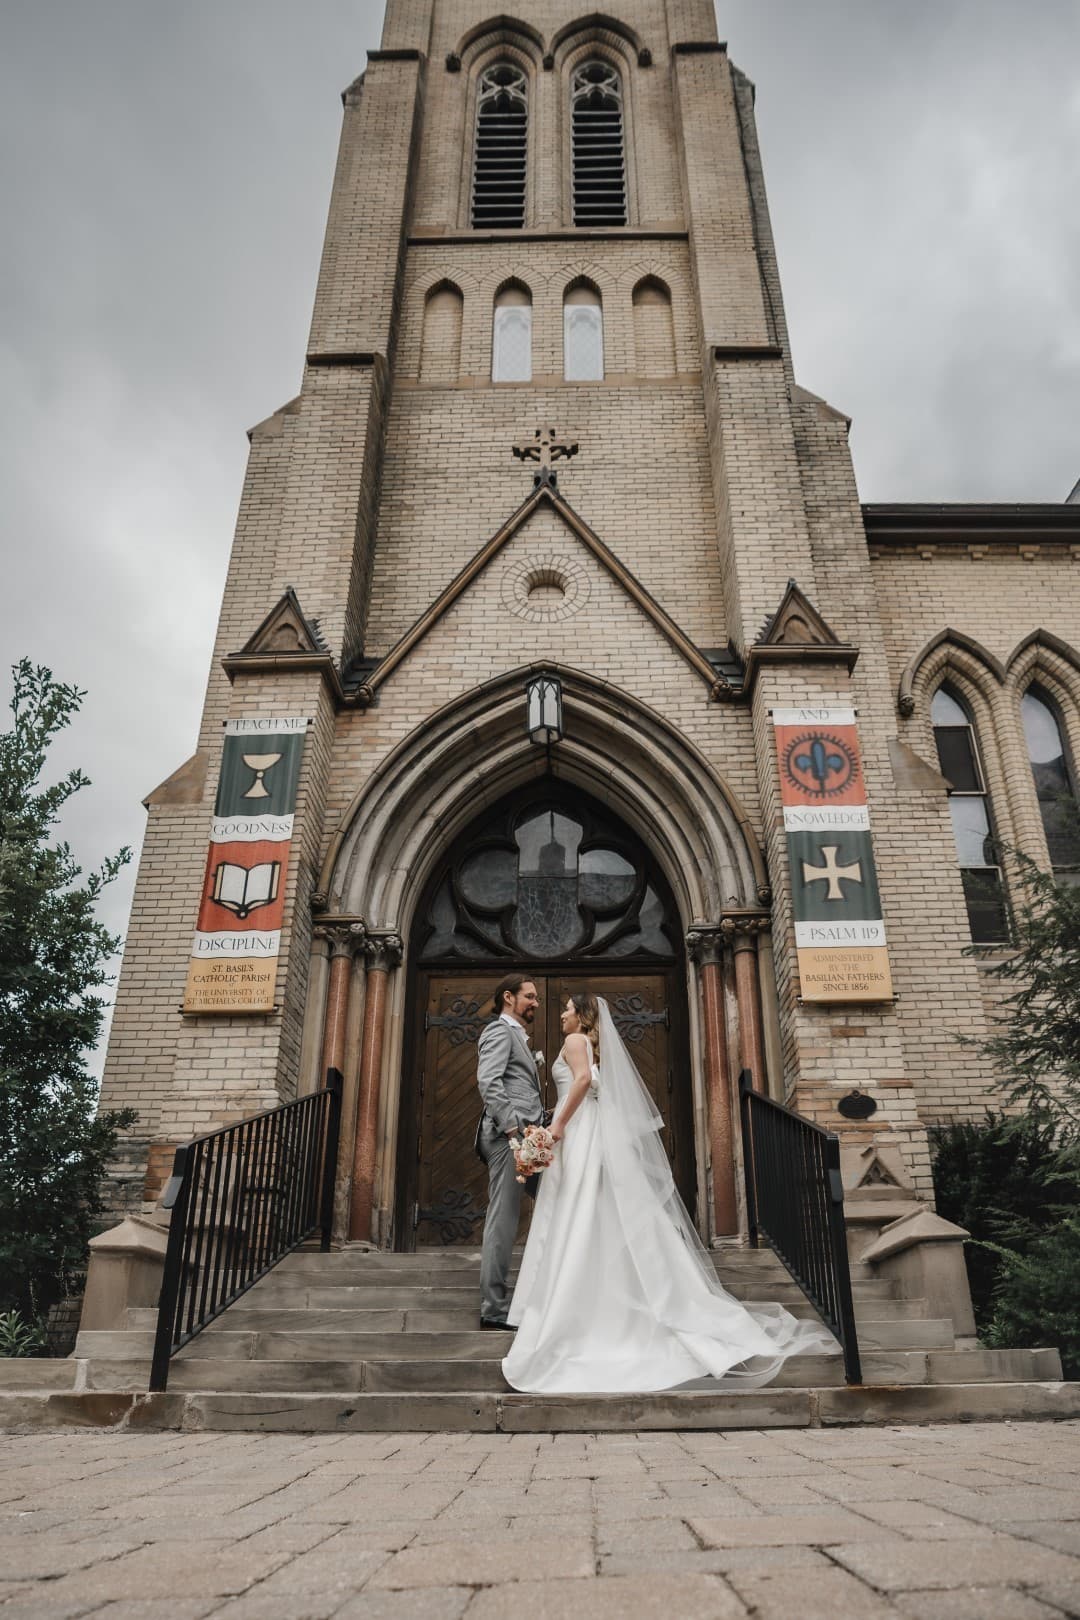 Toronto's Top Wedding Venues: A Narrative Journey